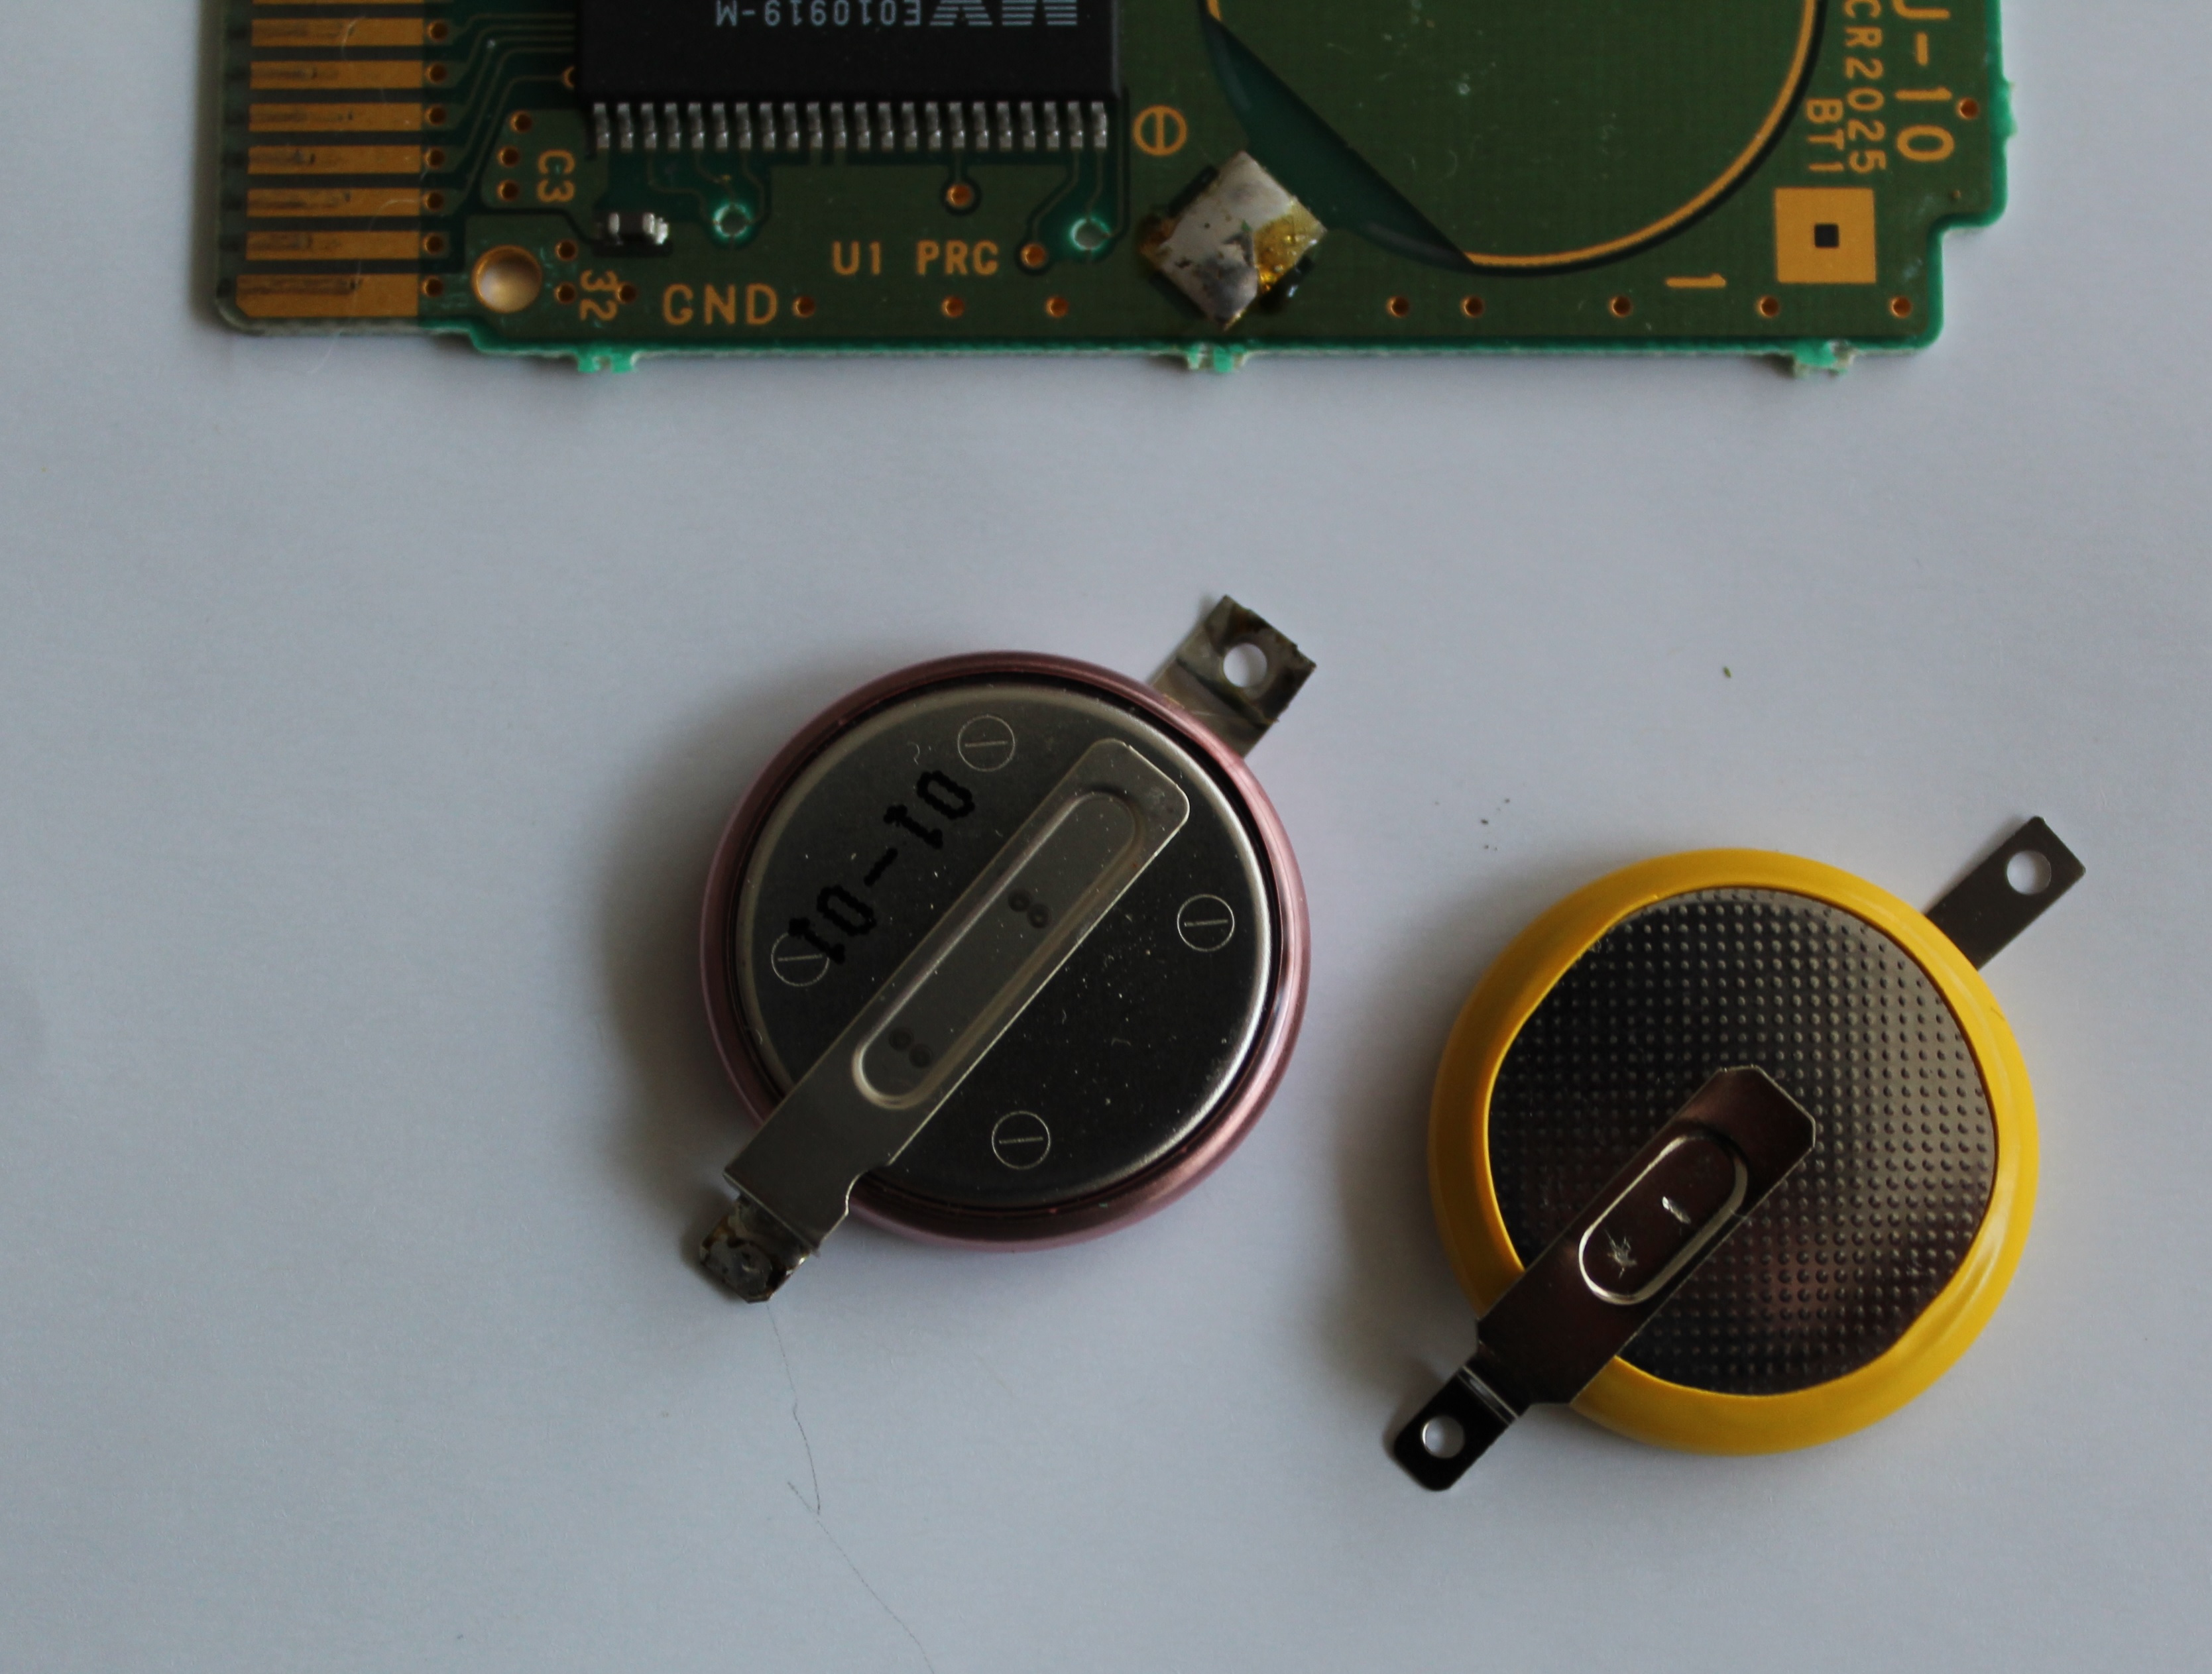 Remplacement de la pile interne d'une cartouche de Game Boy Advance -  Tutoriel de réparation iFixit